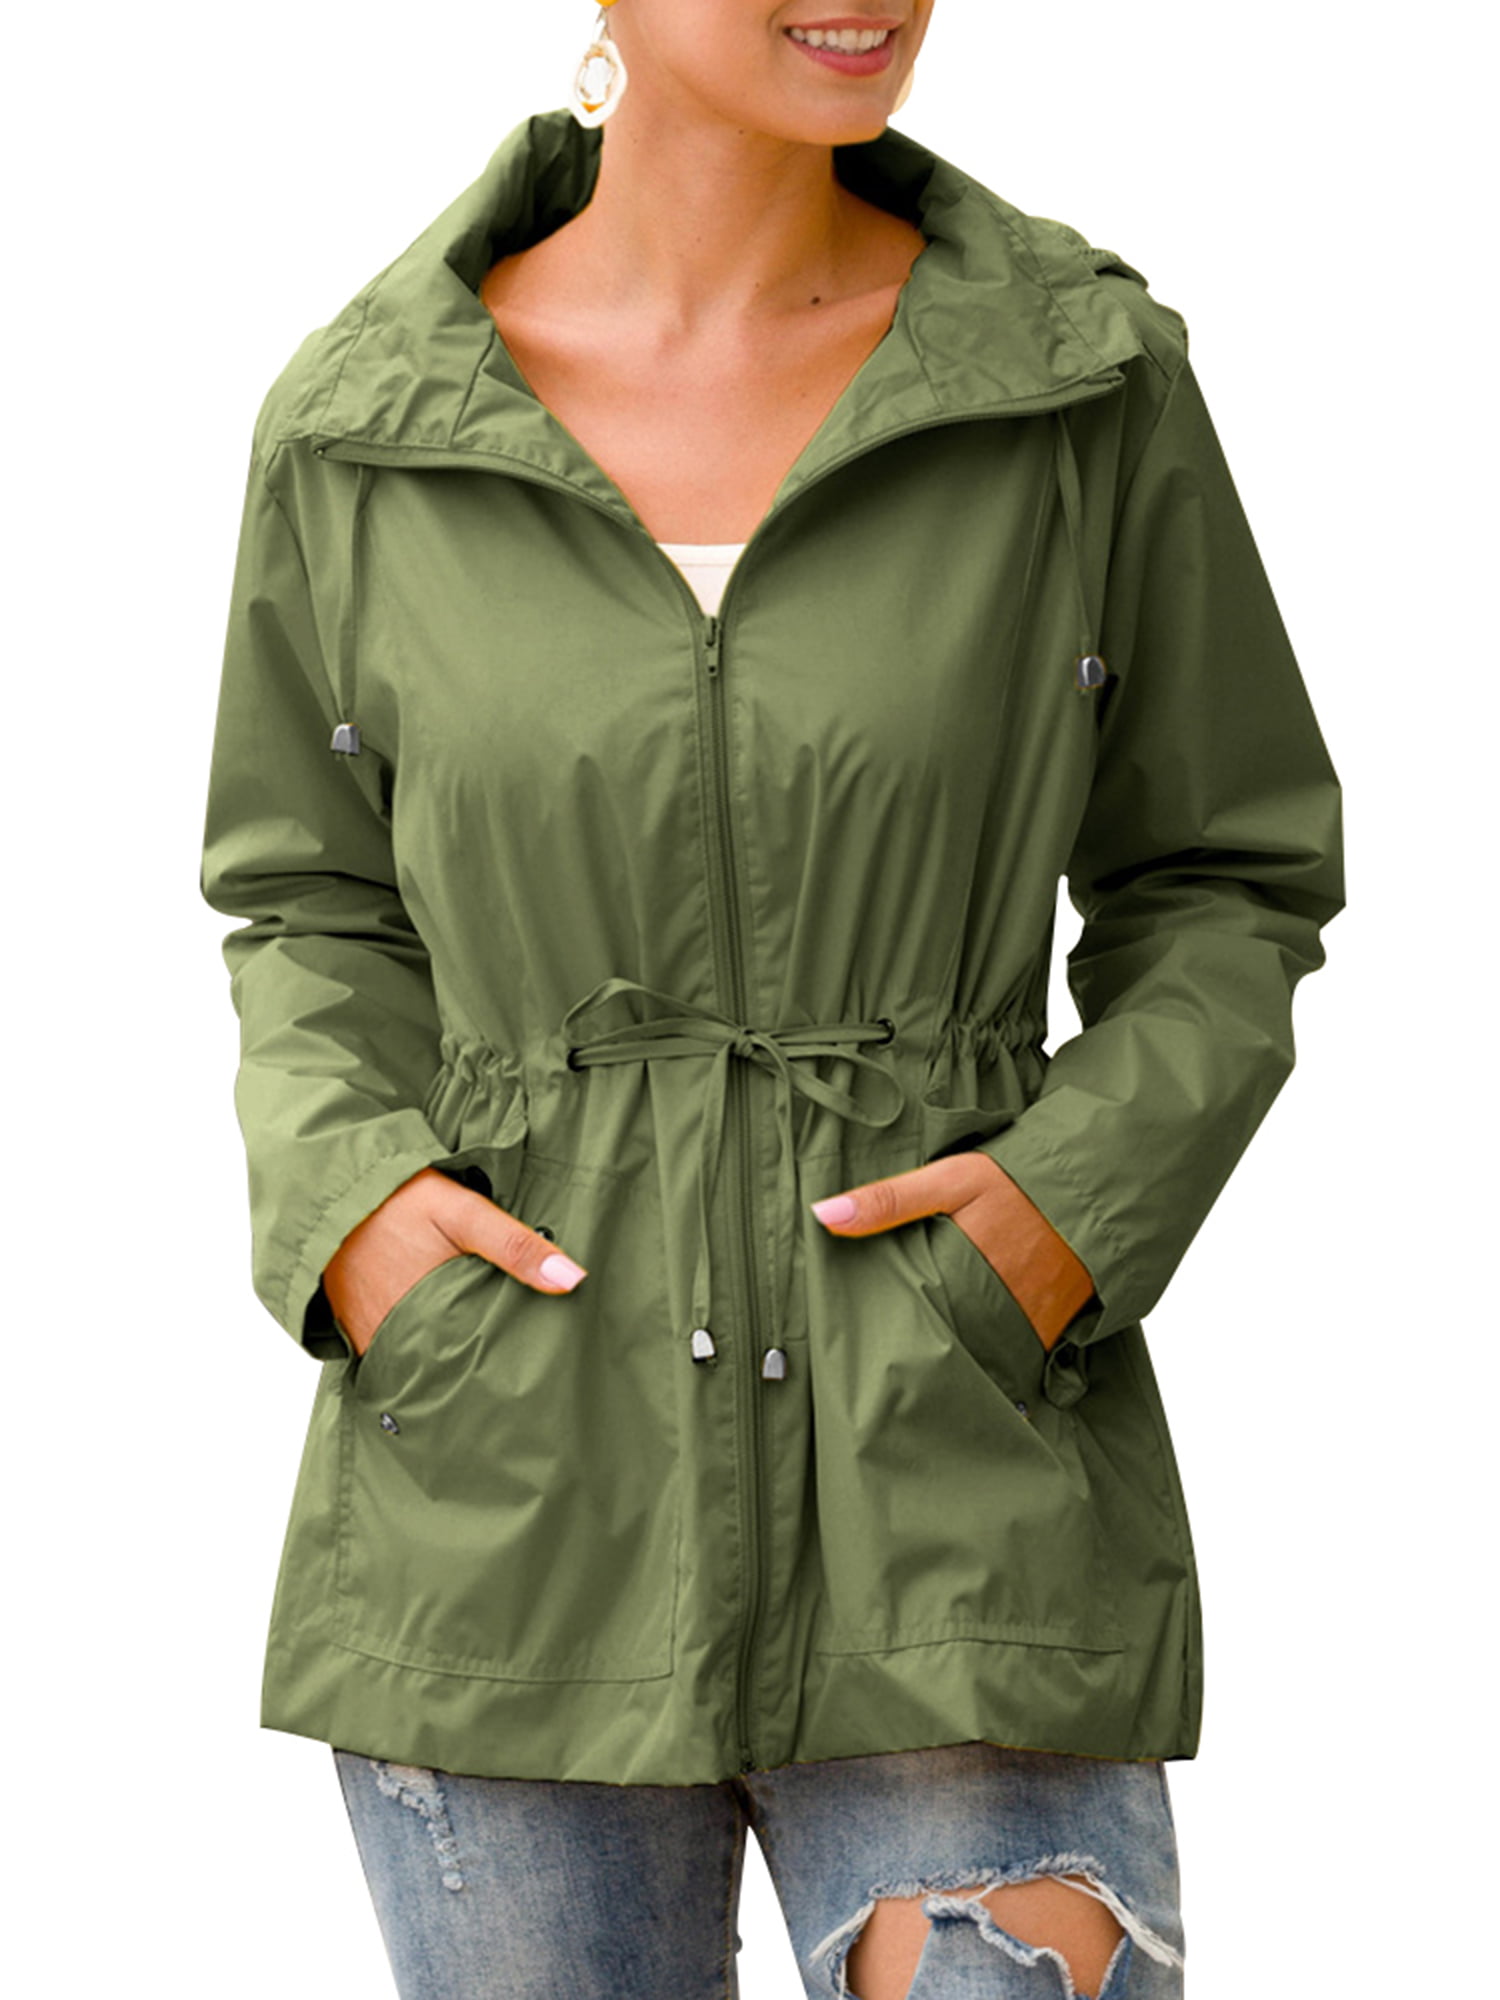 Windbreakers,Womens Waterproof Raincoat Rose Hooded Zip up Windbreaker Pockets Jacket Sport Coat Windproof Outwear